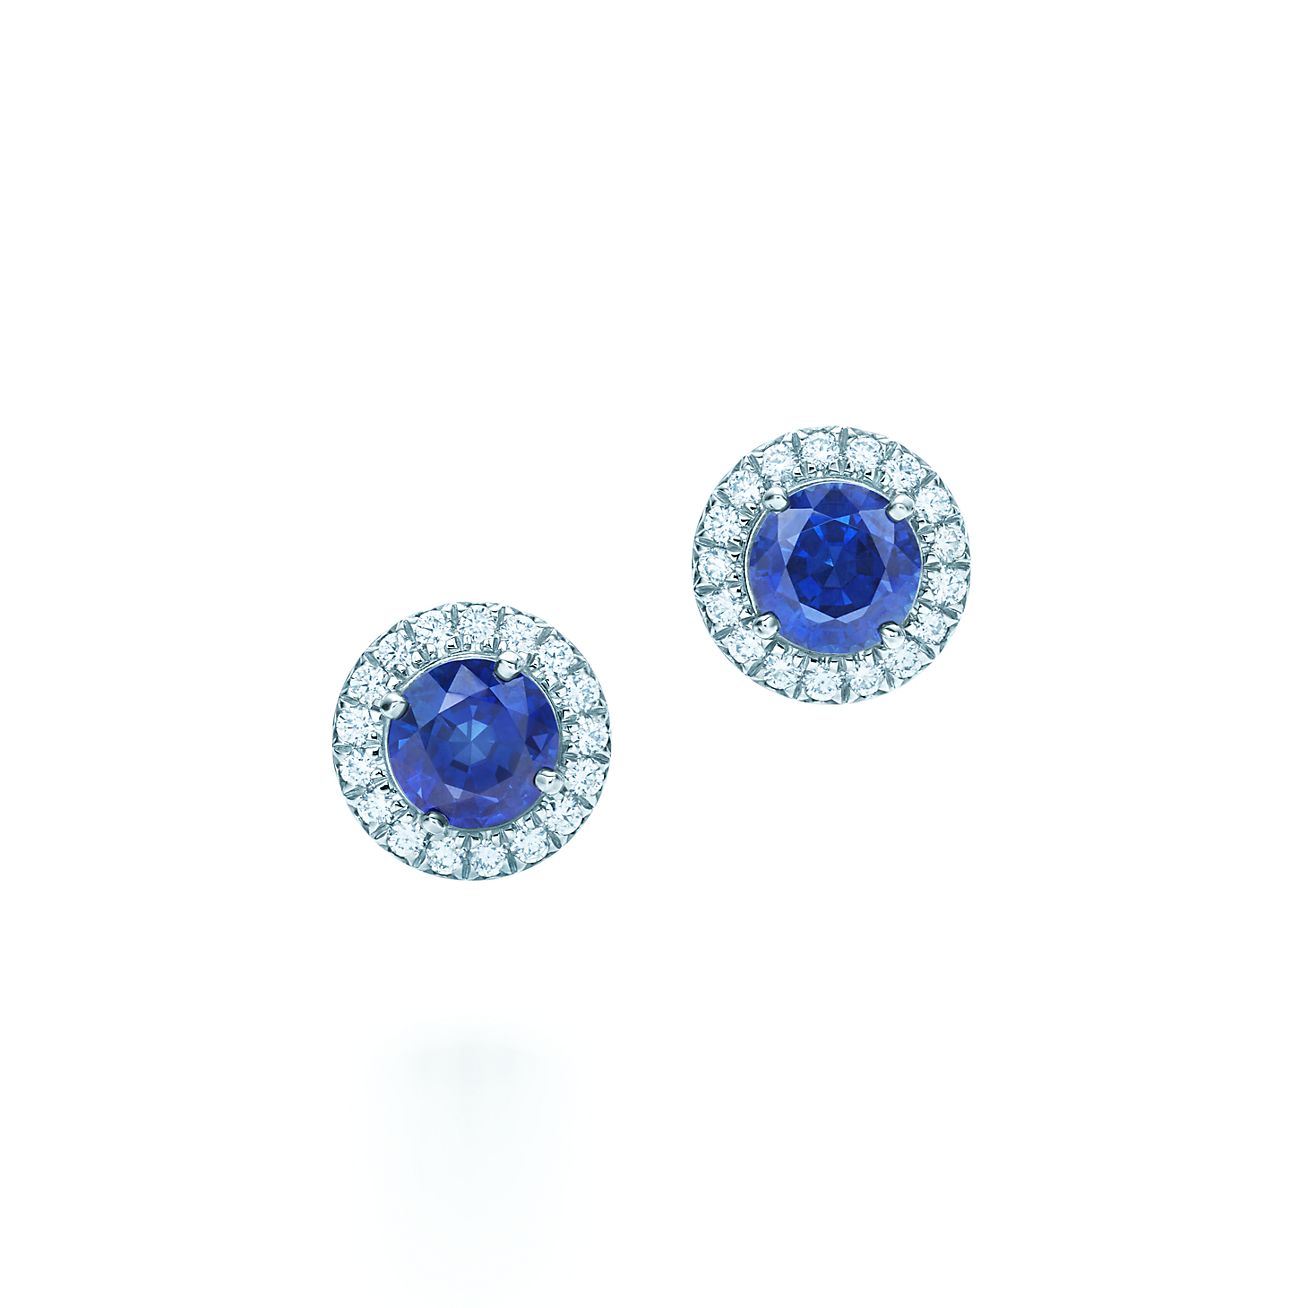 Share more than 81 blue sapphire earrings australia best